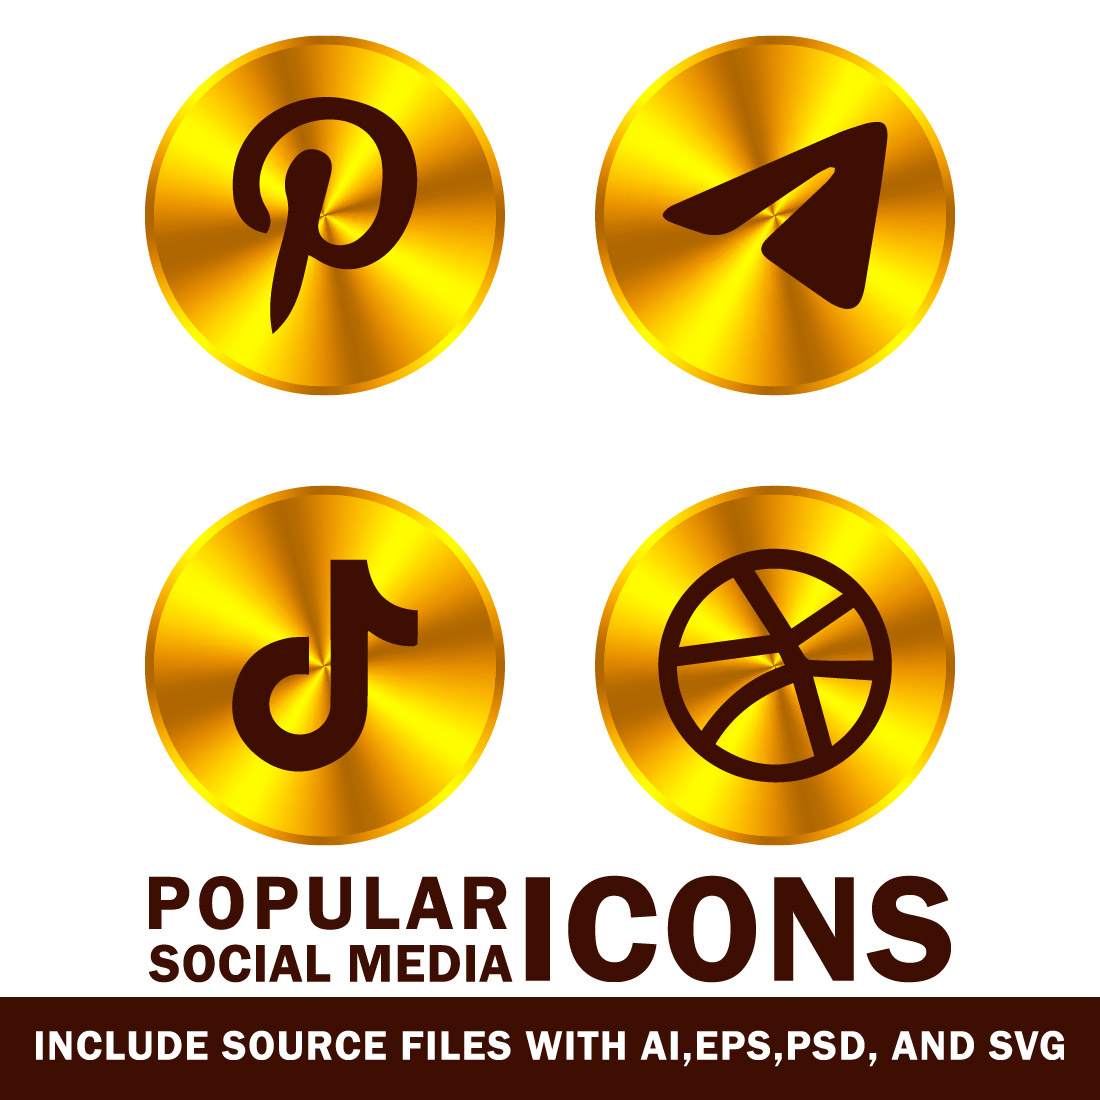 Popular social media icons.